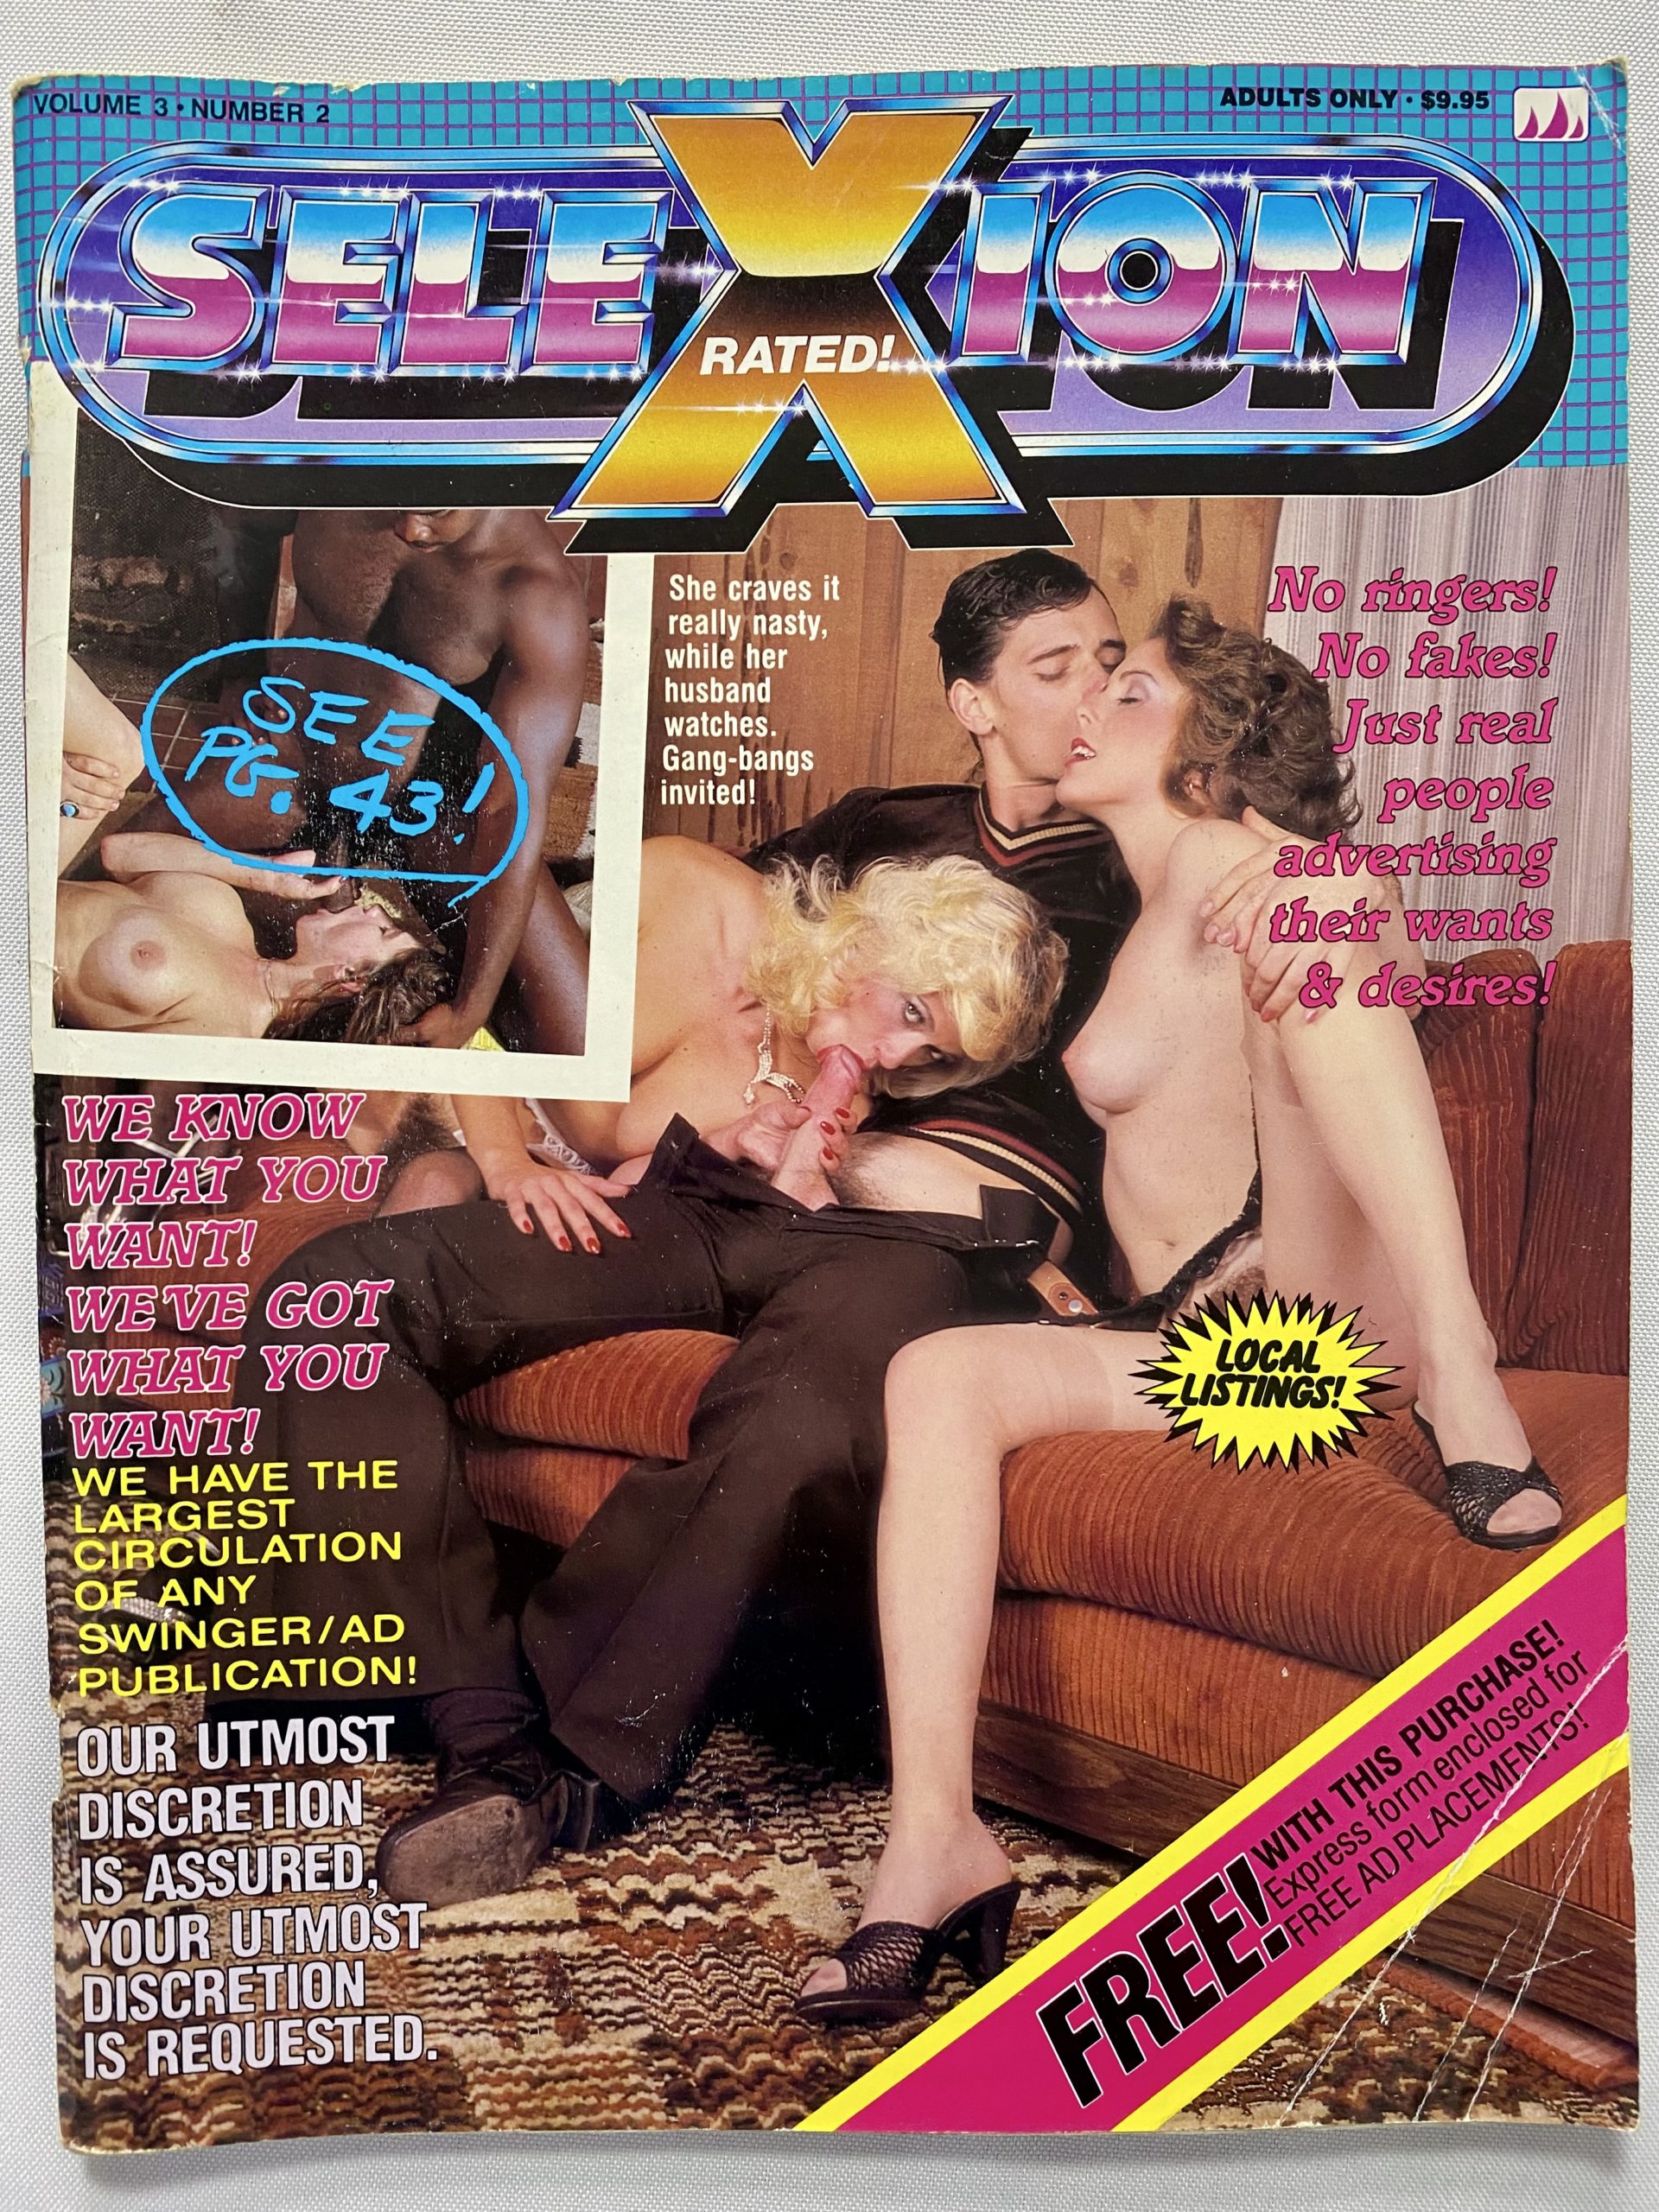 Vintage Porn Ads - 80s Porn Magazine Ads | Sex Pictures Pass